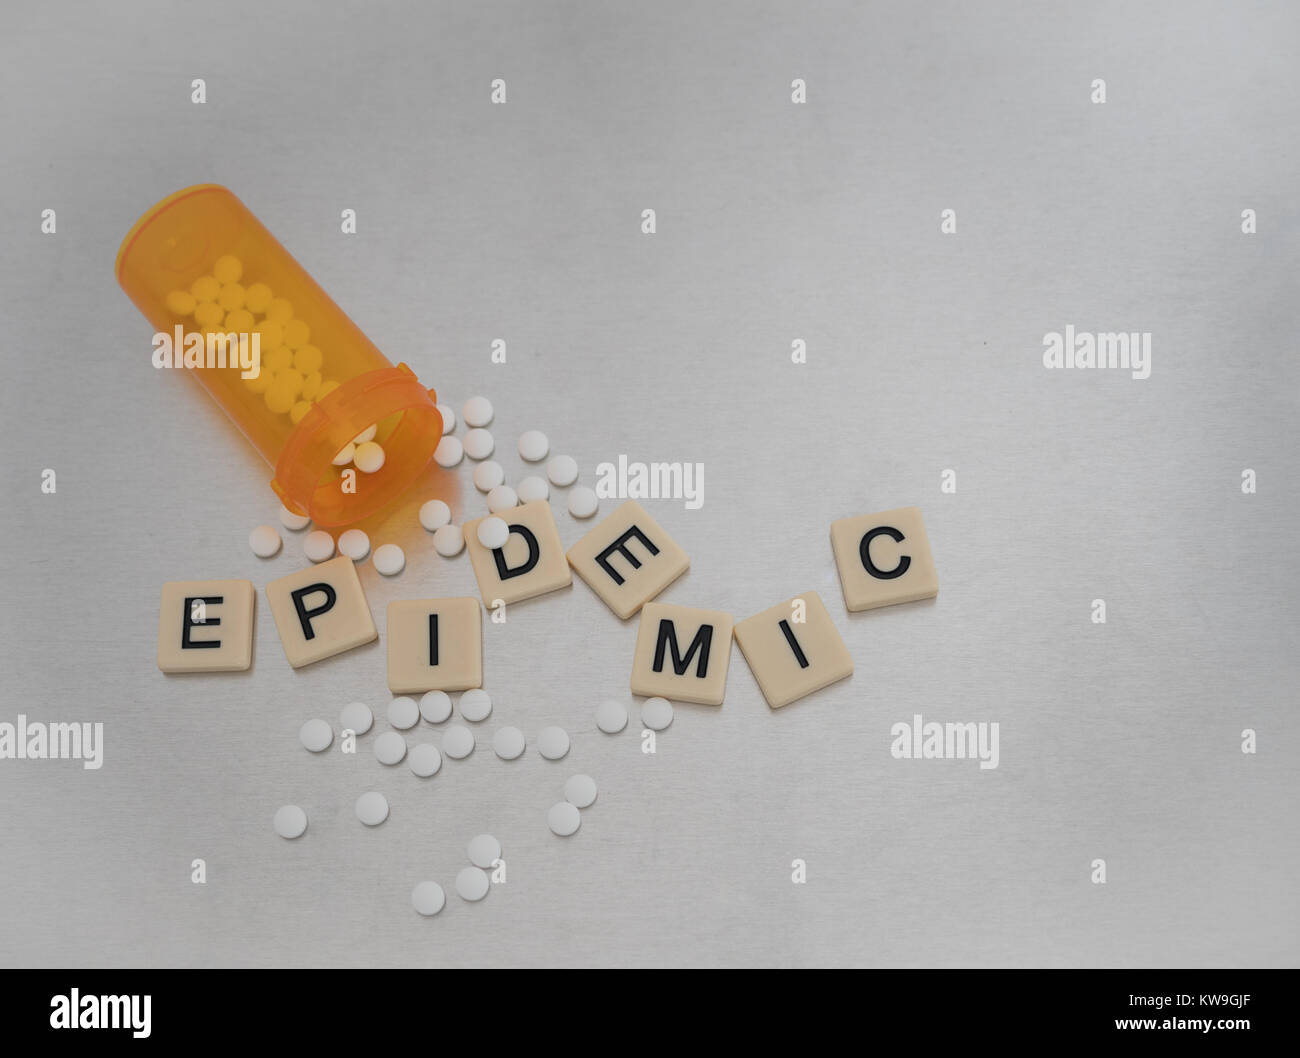 Epidemia scritto con lettere di piastrelle in un modello casuale con una bottiglia aperta di ossicodone pillole. Fotografato dal di sopra su un acciaio inossidabile. Foto Stock